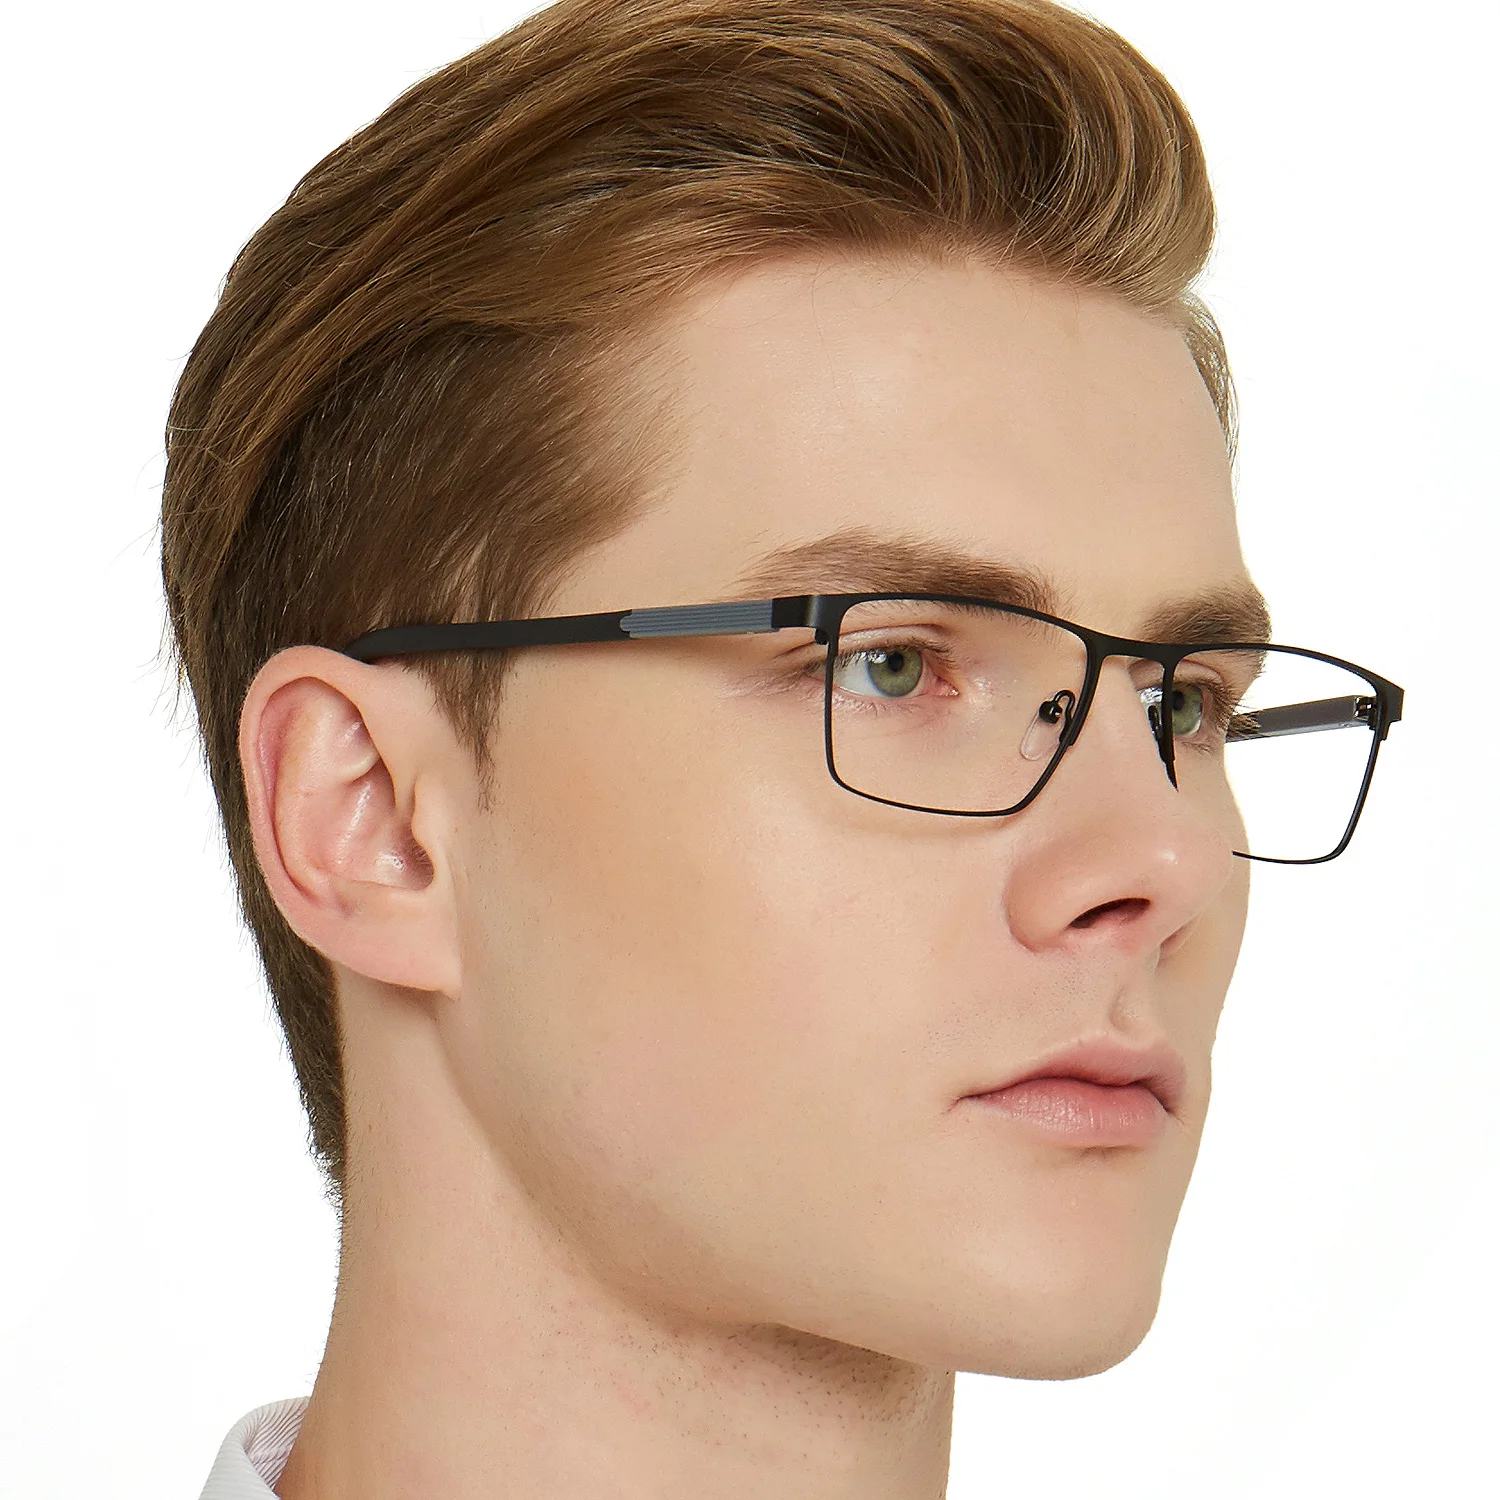 Wholesale Gafas ópticas rectangulares para mujer y hombre, gafas con montura metálica, producto en oferta From